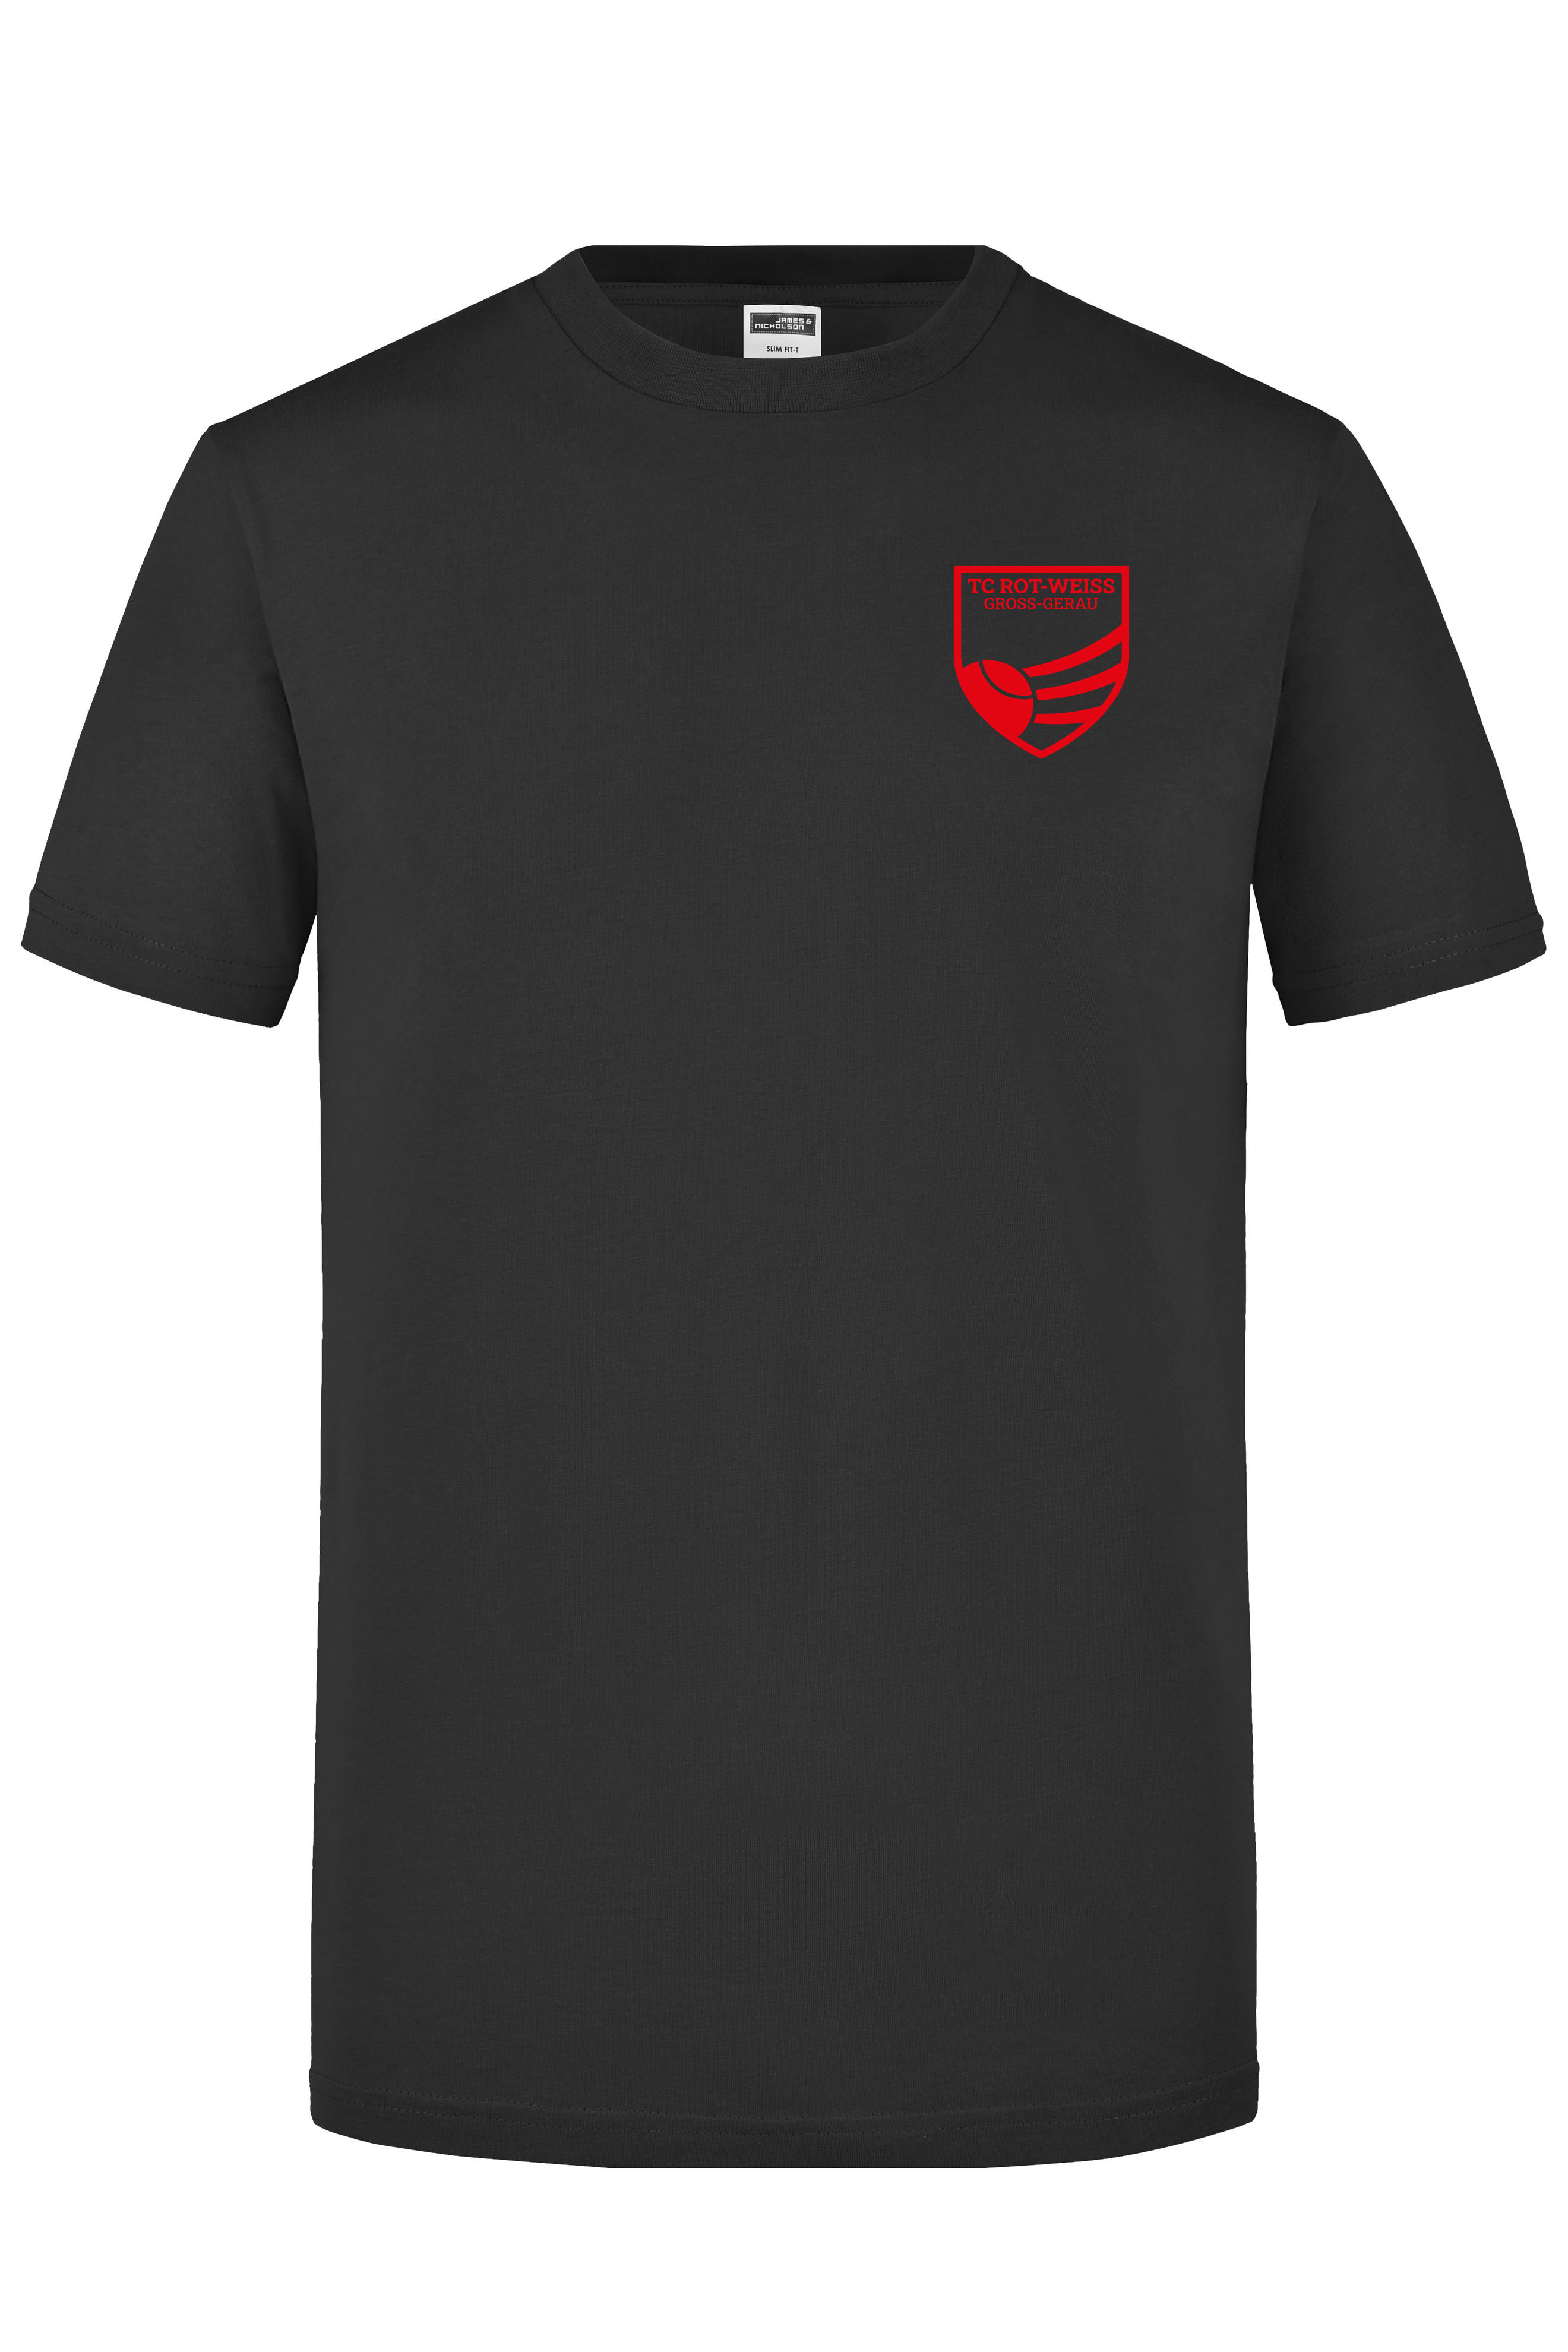 TC Rot-Weiss - Vorteil Dein Name - T-Shirt rot auf schwarz